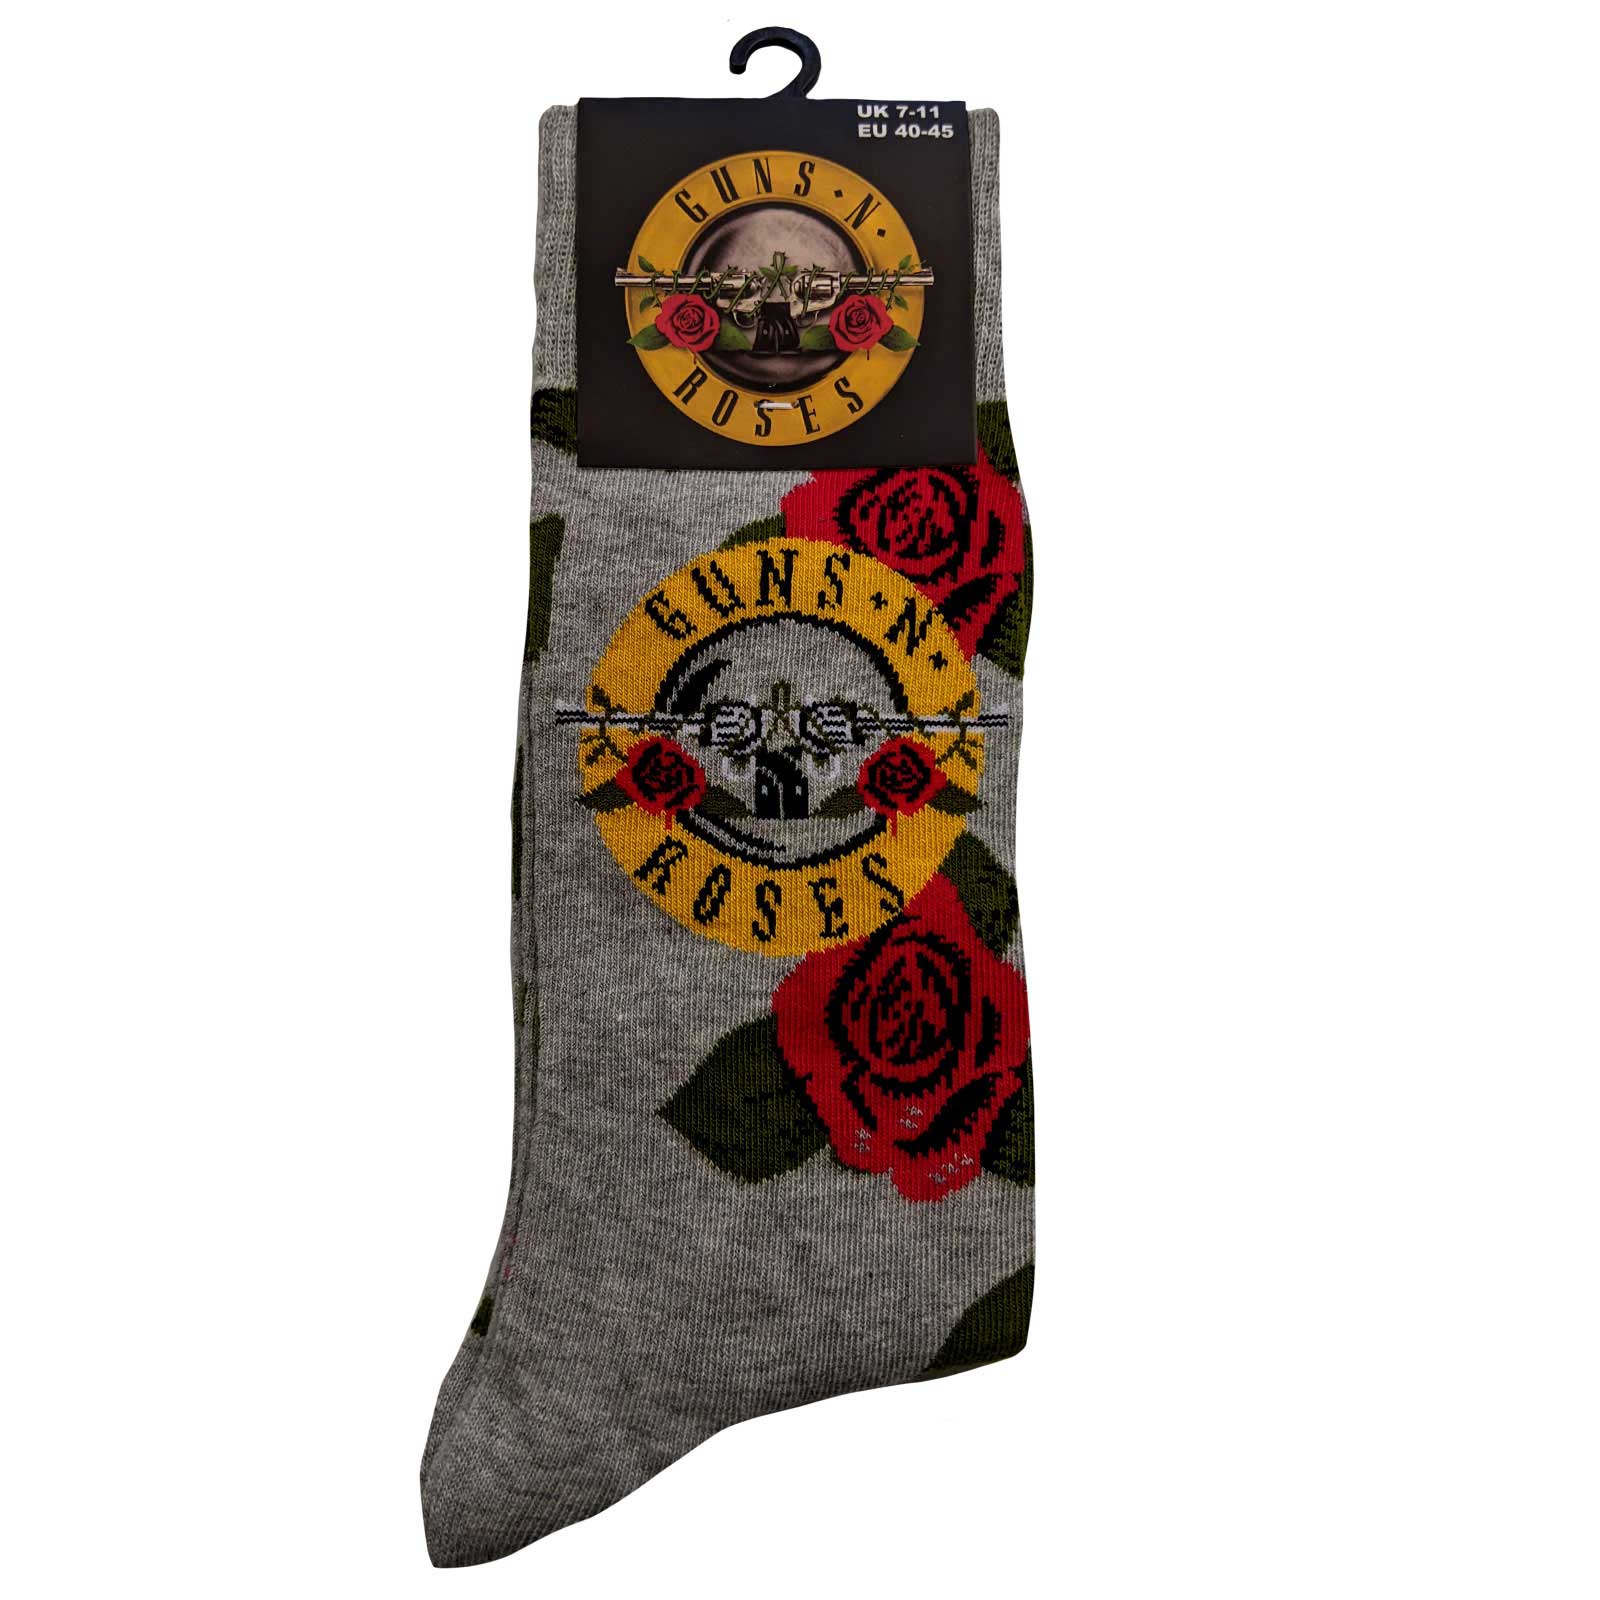 Official Band Merch Guns N' Roses Unisex Ankle Socks: Bullet Roses